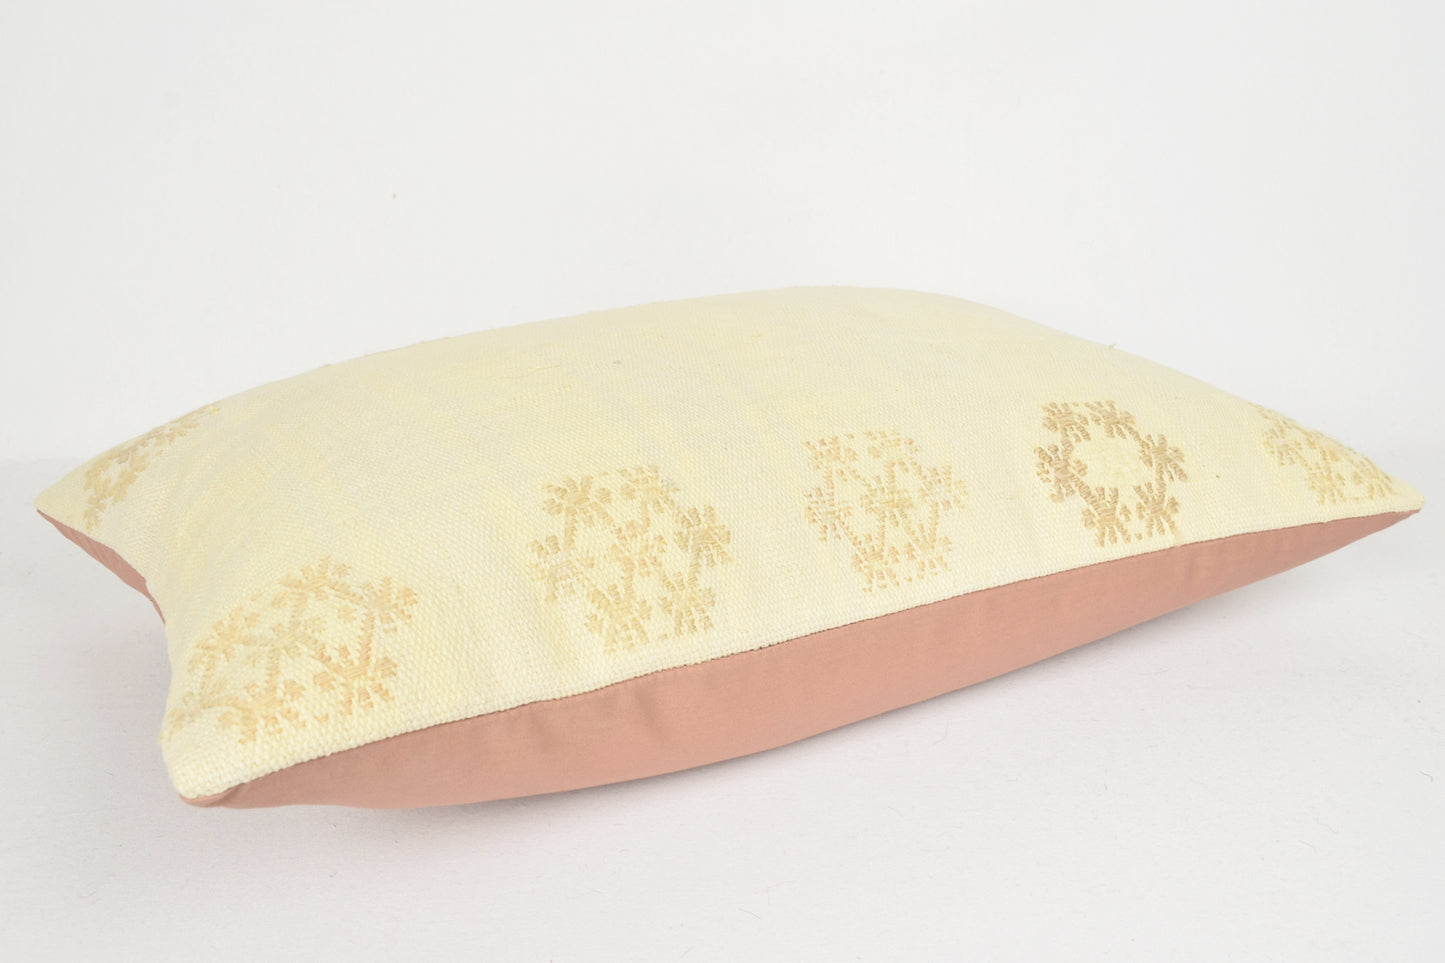 Turkish Outdoor Pillows E00279 Lumbar Southwest Historical Soft